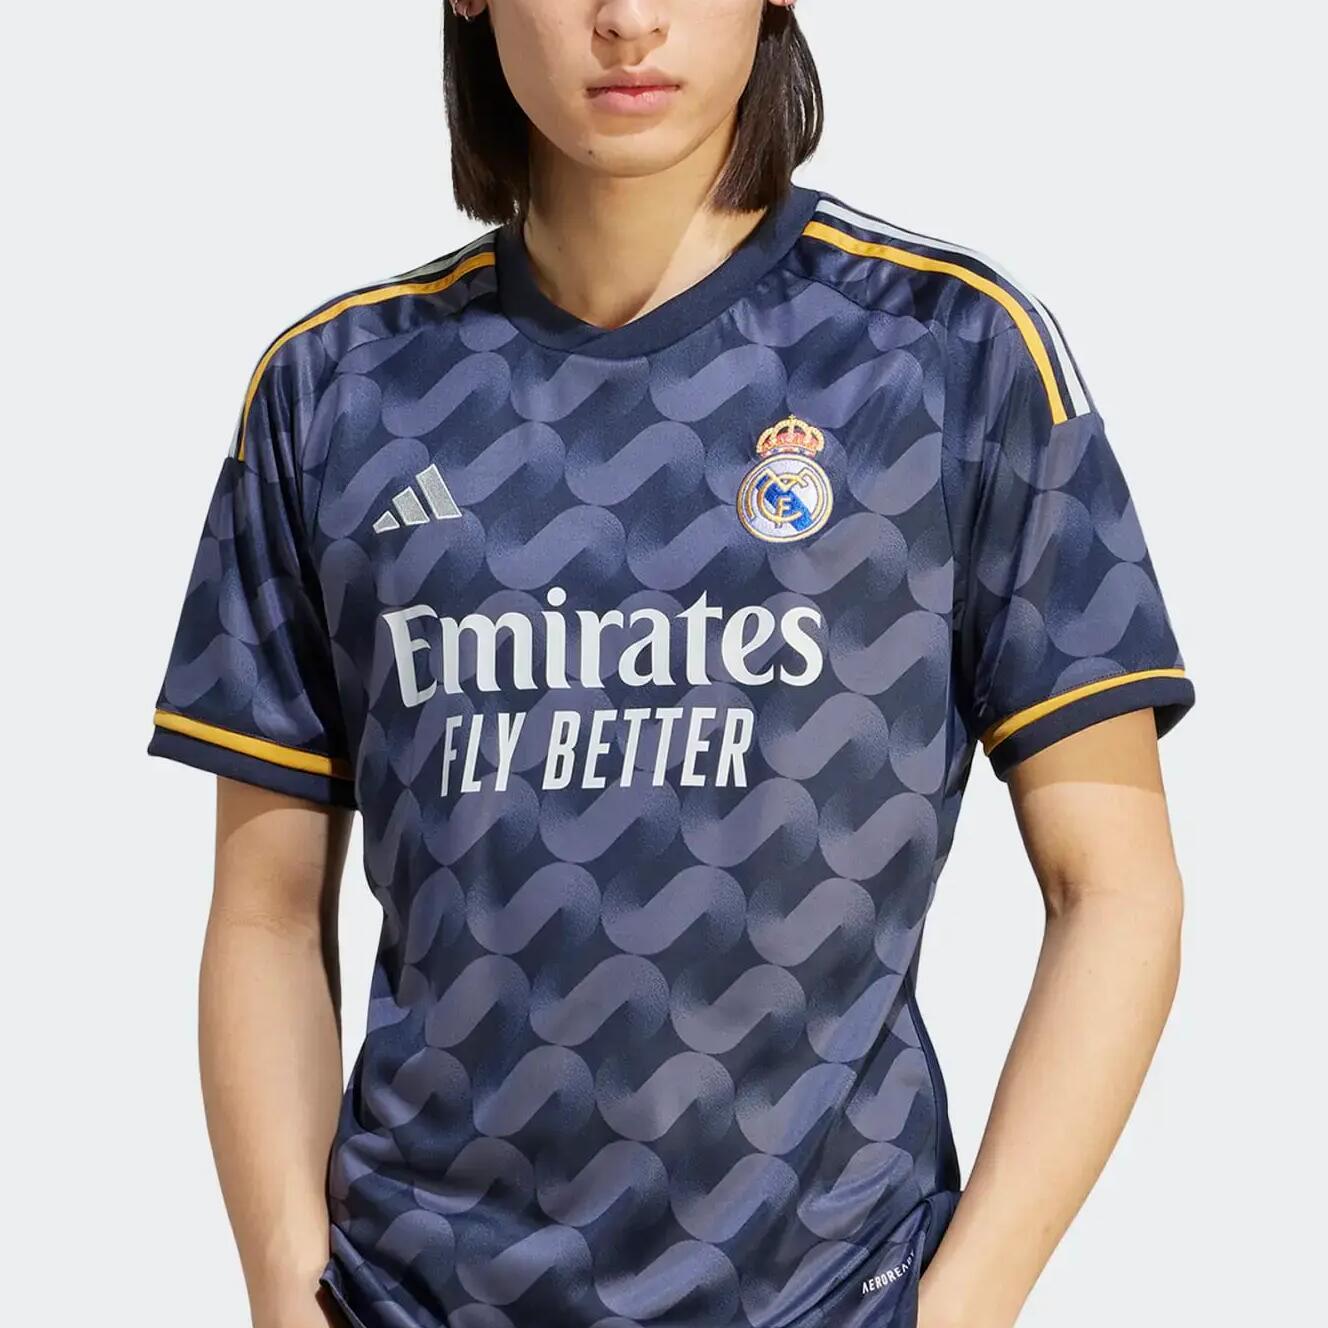 Adidas Real Madrid voetbalshirts voor spelers en fans